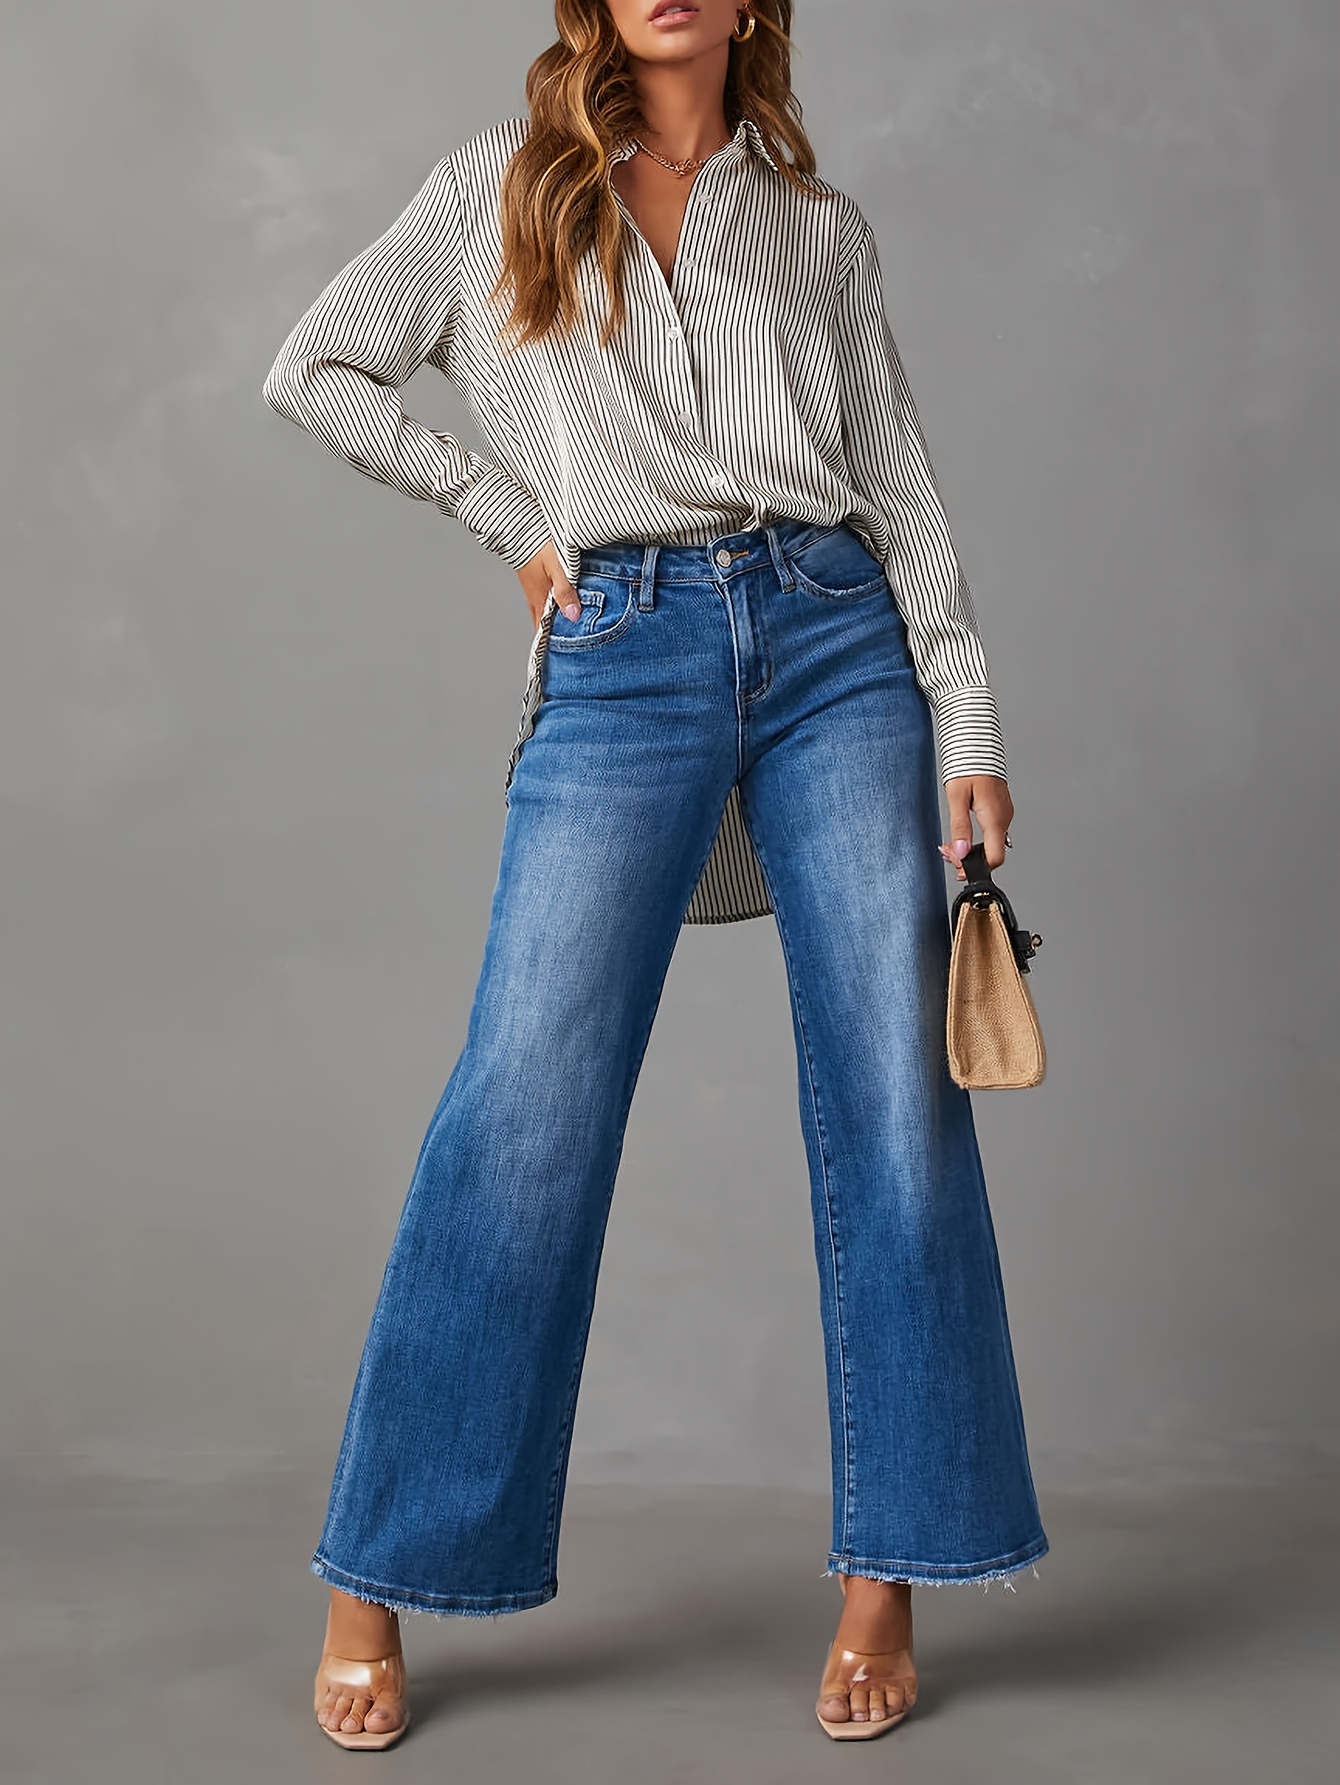 Loose Fit Versatile Straight Jeans, Slash Pockets Non-Stretch Fashion Denim  Pants, Women's Denim Jeans & Clothing